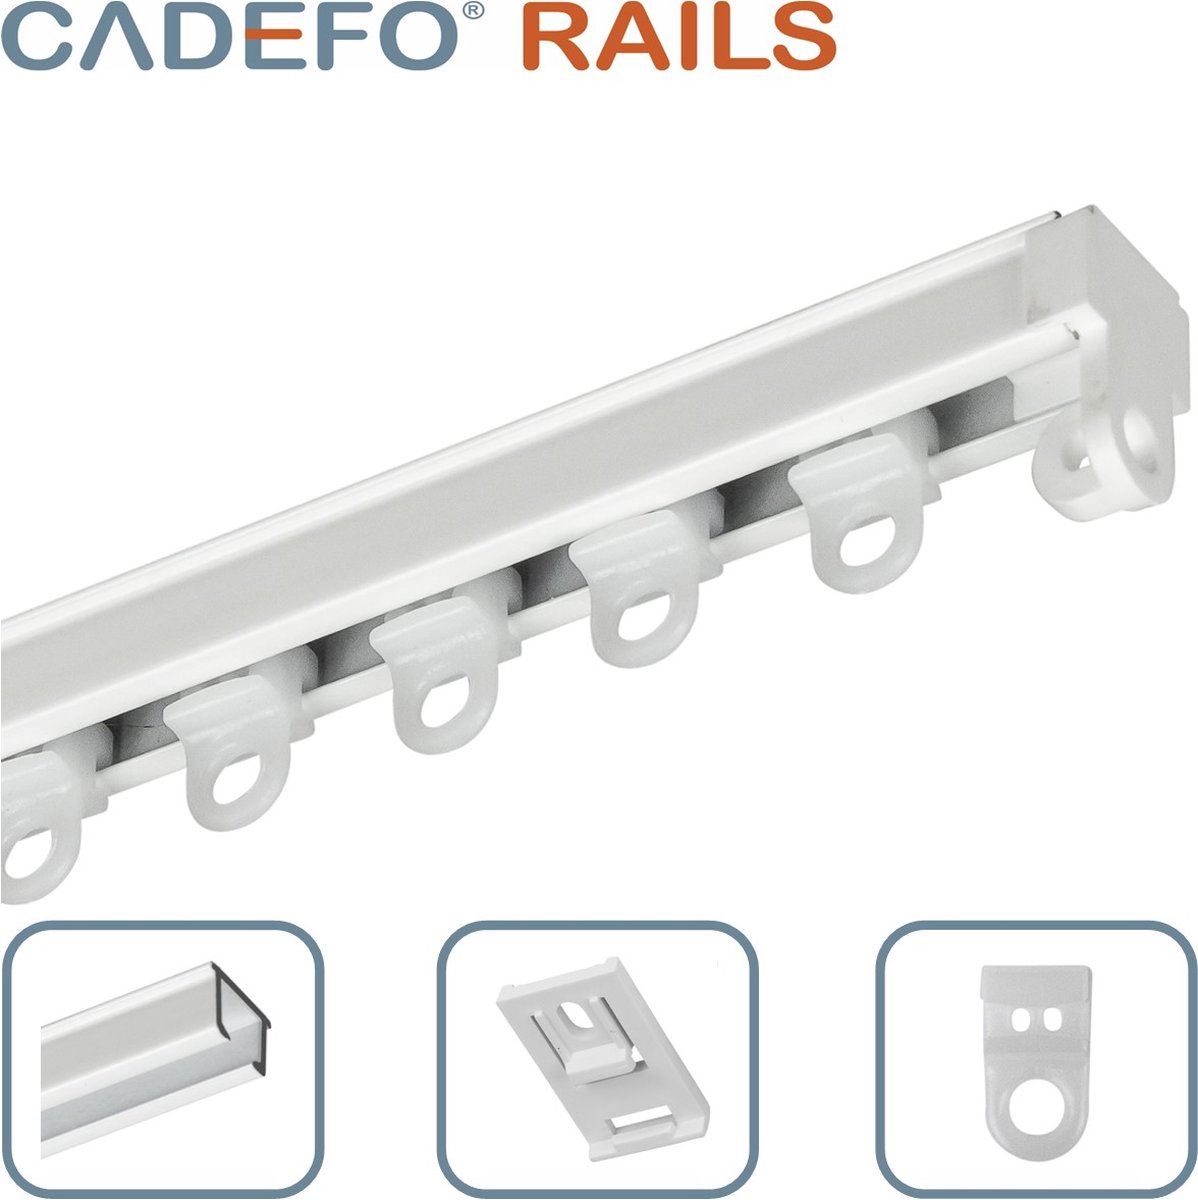 CADEFO RAILS (551 - 600 cm) Gordijnrails - Compleet op maat! - UIT 1 STUK - Leverbaar tot 6 meter - Plafondbevestiging - Lengte 563 cm